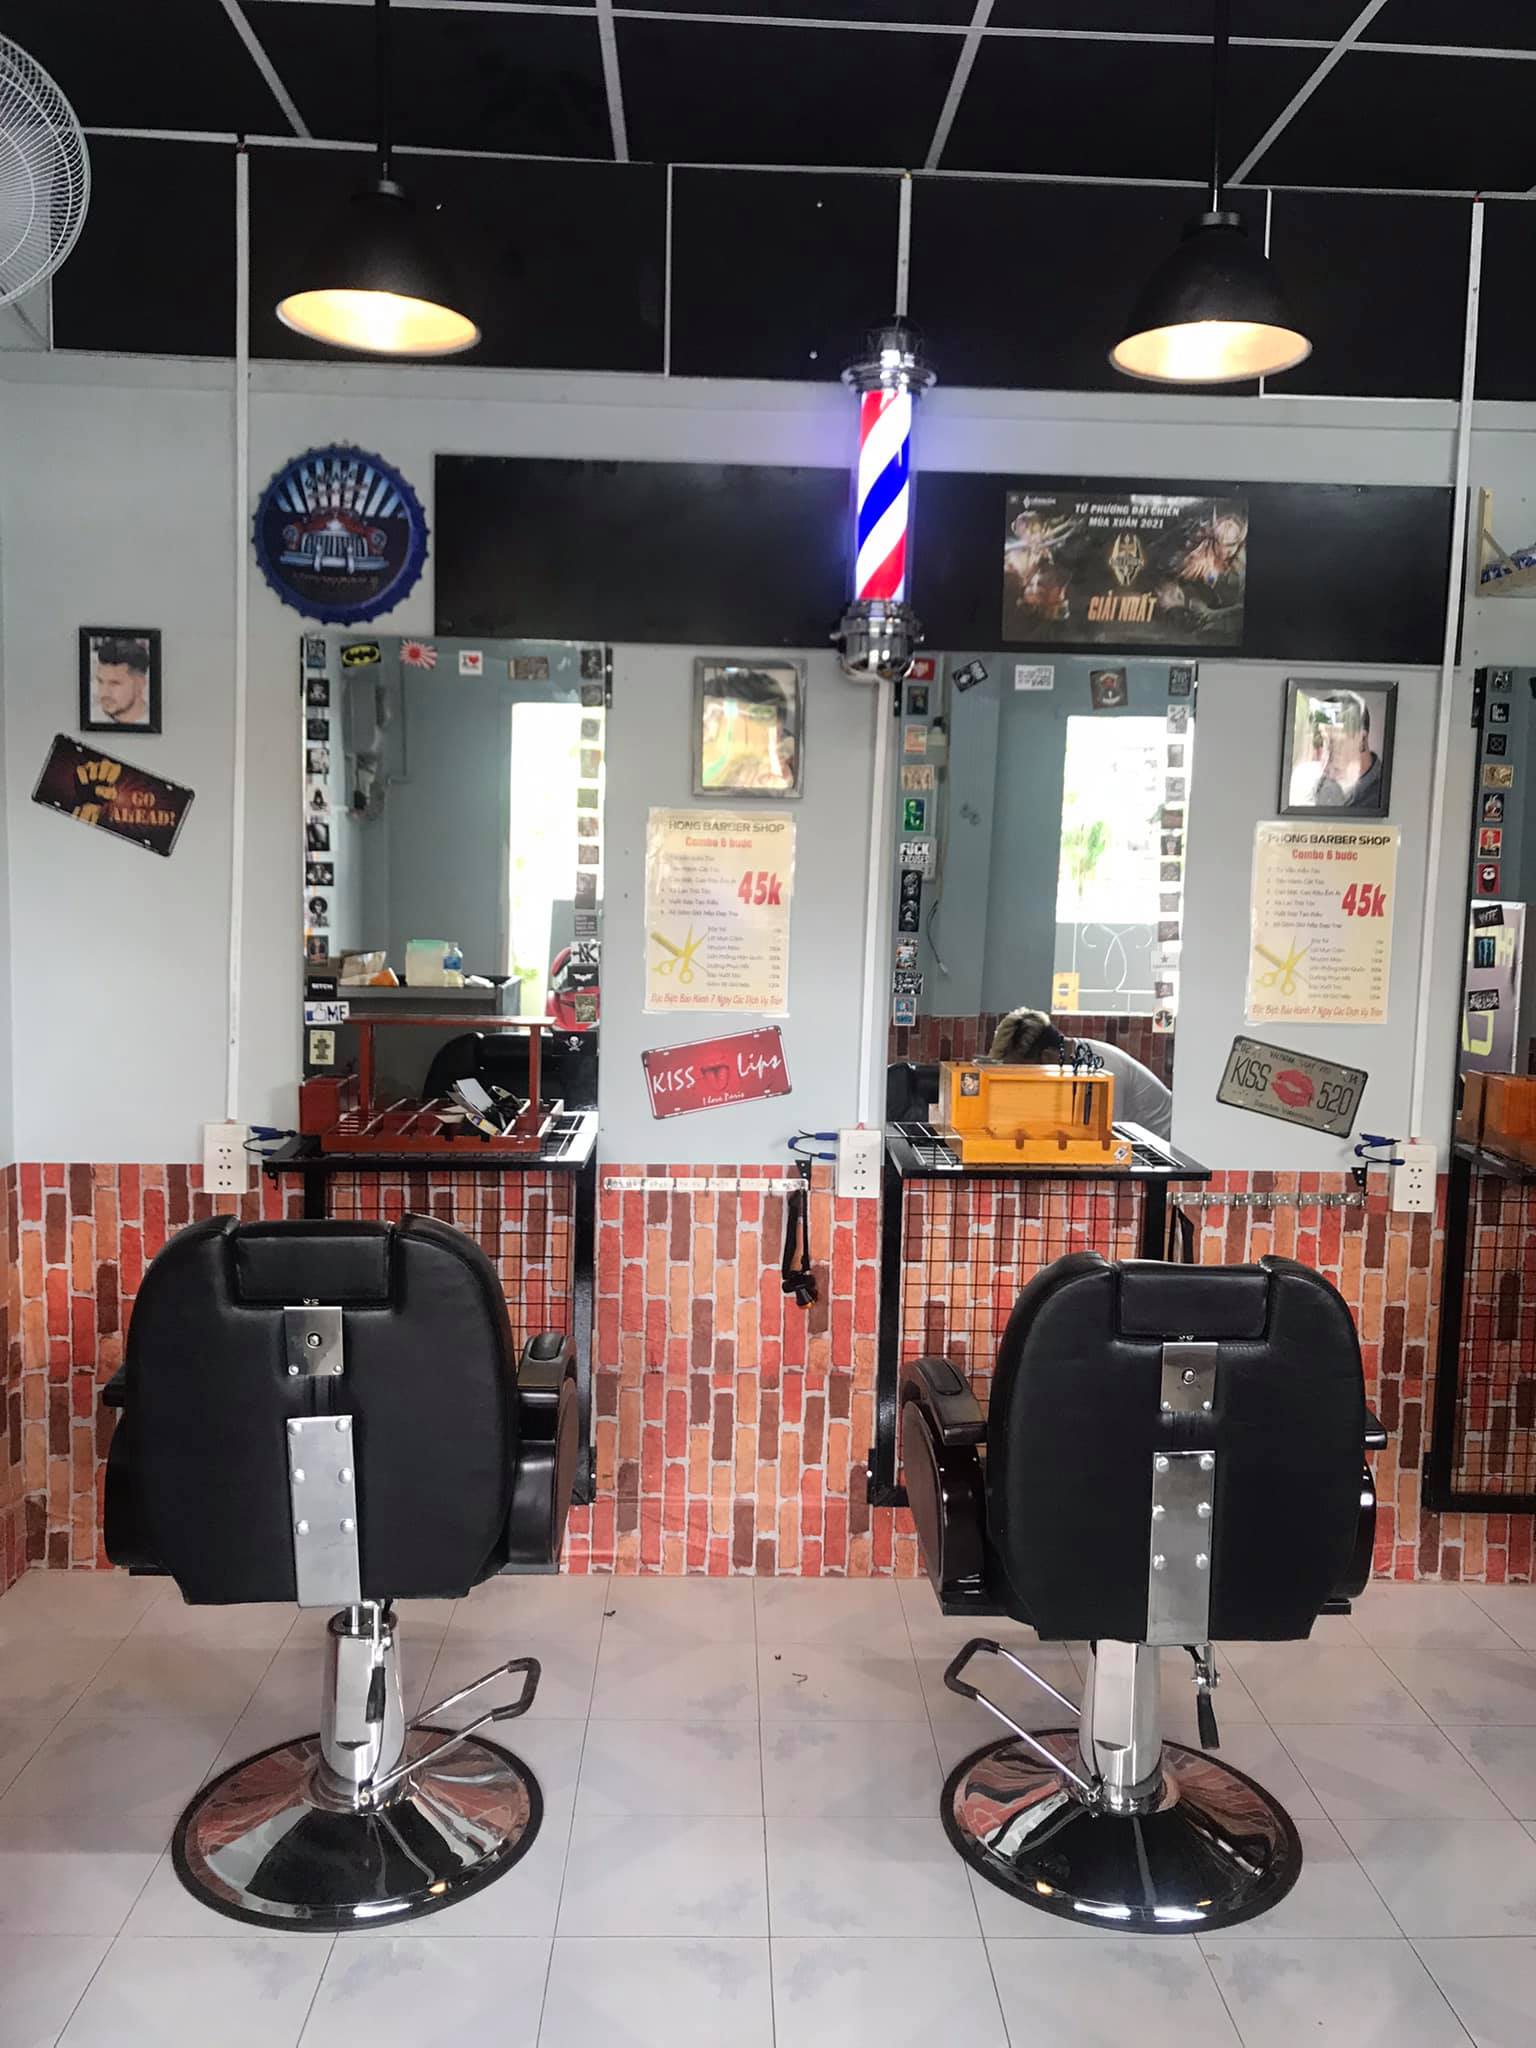 SALON Tóc Nam Hùng NGuyễn  Hair Salon